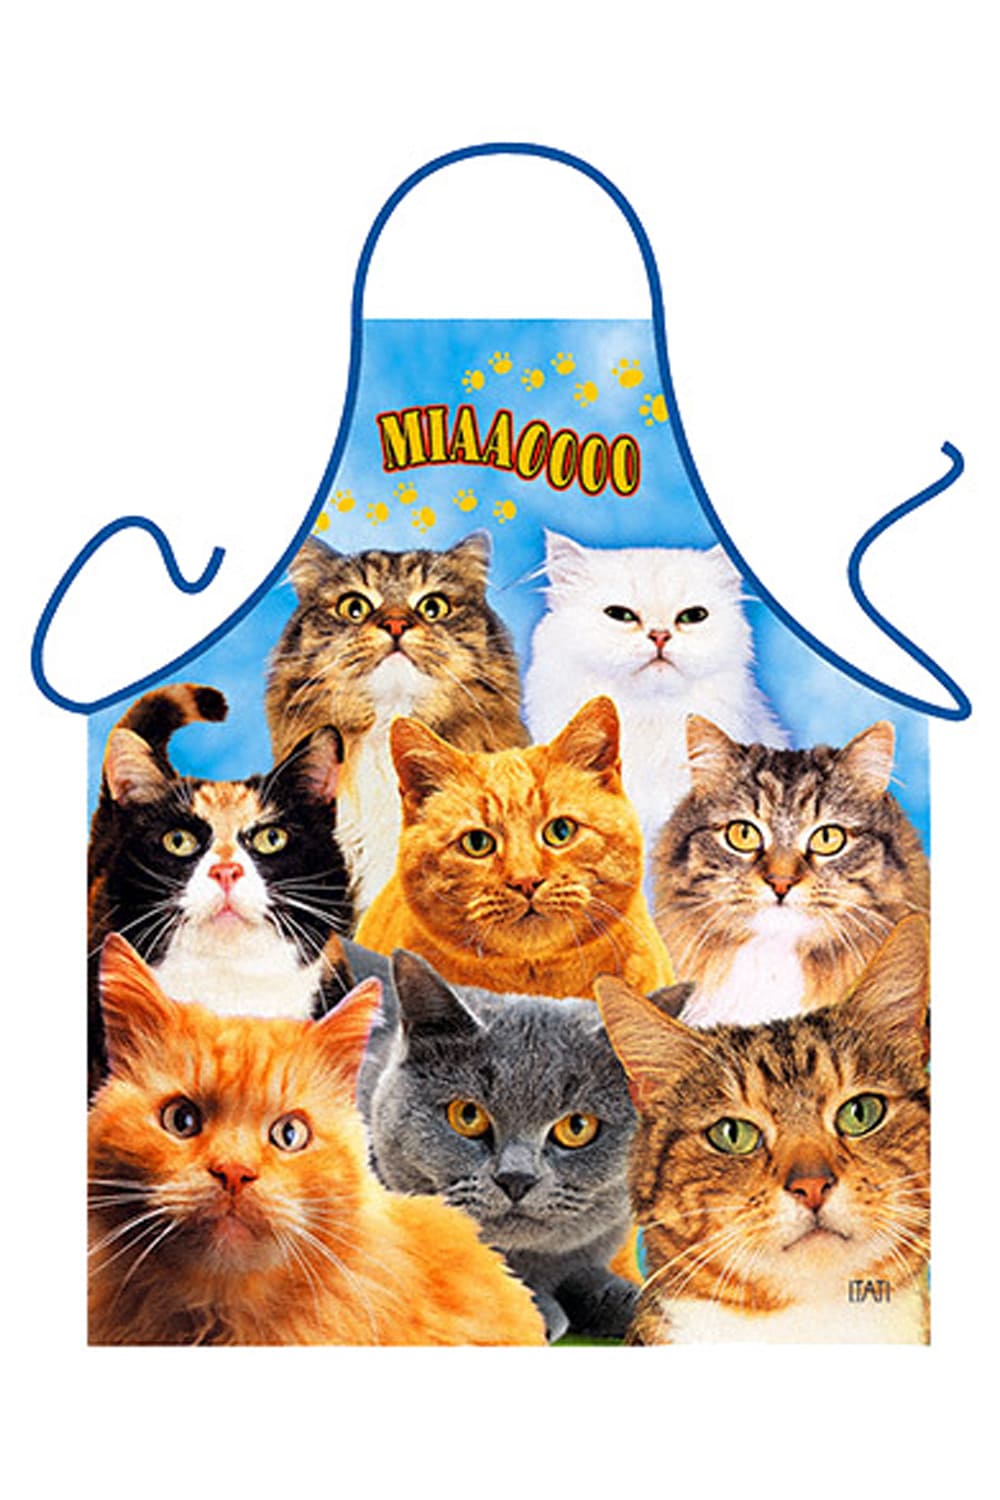 Auf der lustigen Kochschuerze sind verschiedene Katzen und Katzenrassen abgebildet. Die Textilfarbe der Grillschuerze ist in blauer Farbe mit kleinen Pfotabdruecken. Mit den suessen Kaetzchen auf der Schuerze, macht das Kochen, backen und grillen doch noch viel mehr Spass. Ein originelles und witziges Geschenk für Katzenliebhaber.